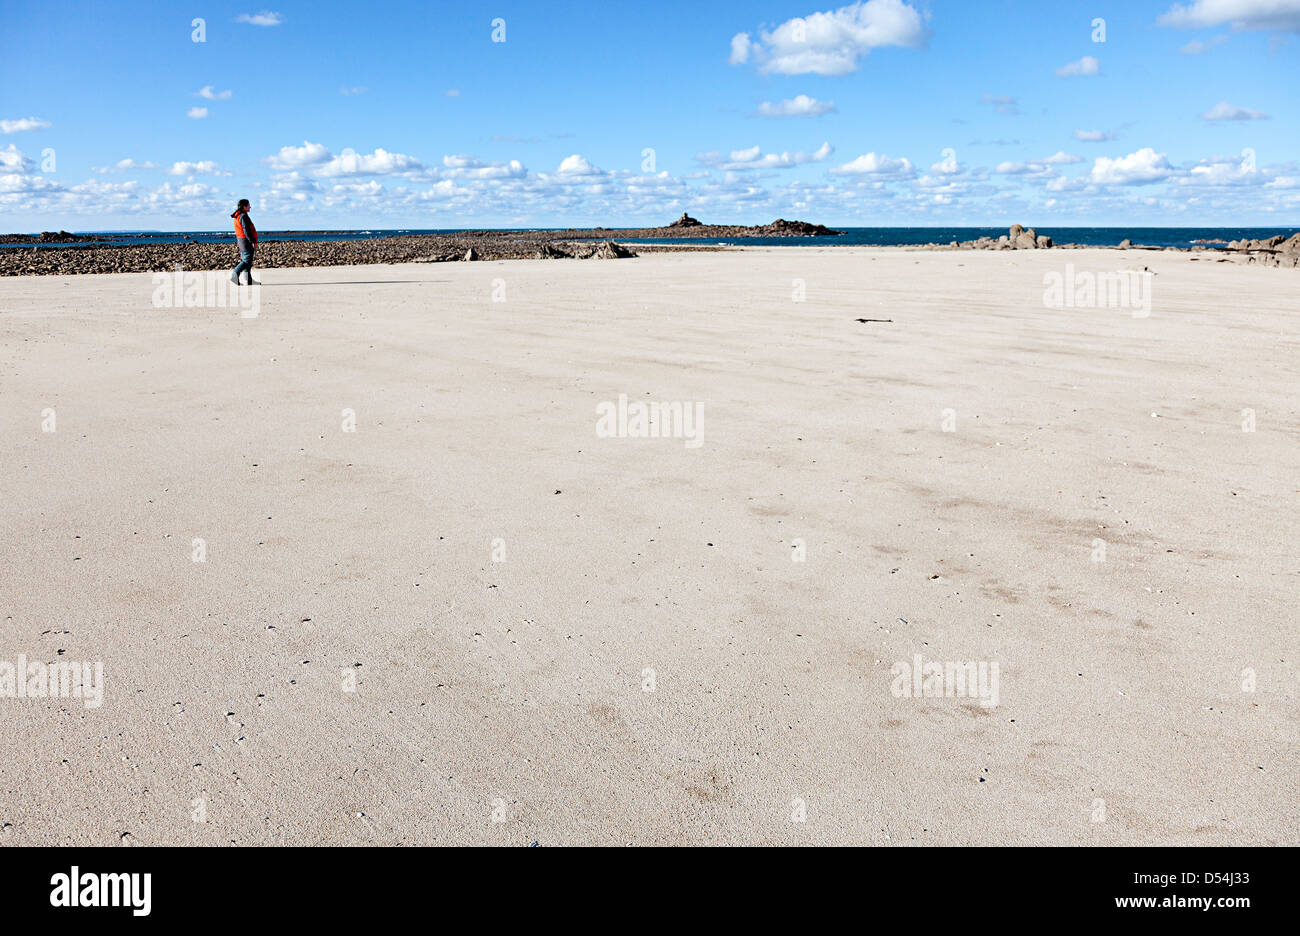 Femme marche sur une plage de sable, l'île de Jersey, Ecrehous Channel Islands, UK Banque D'Images